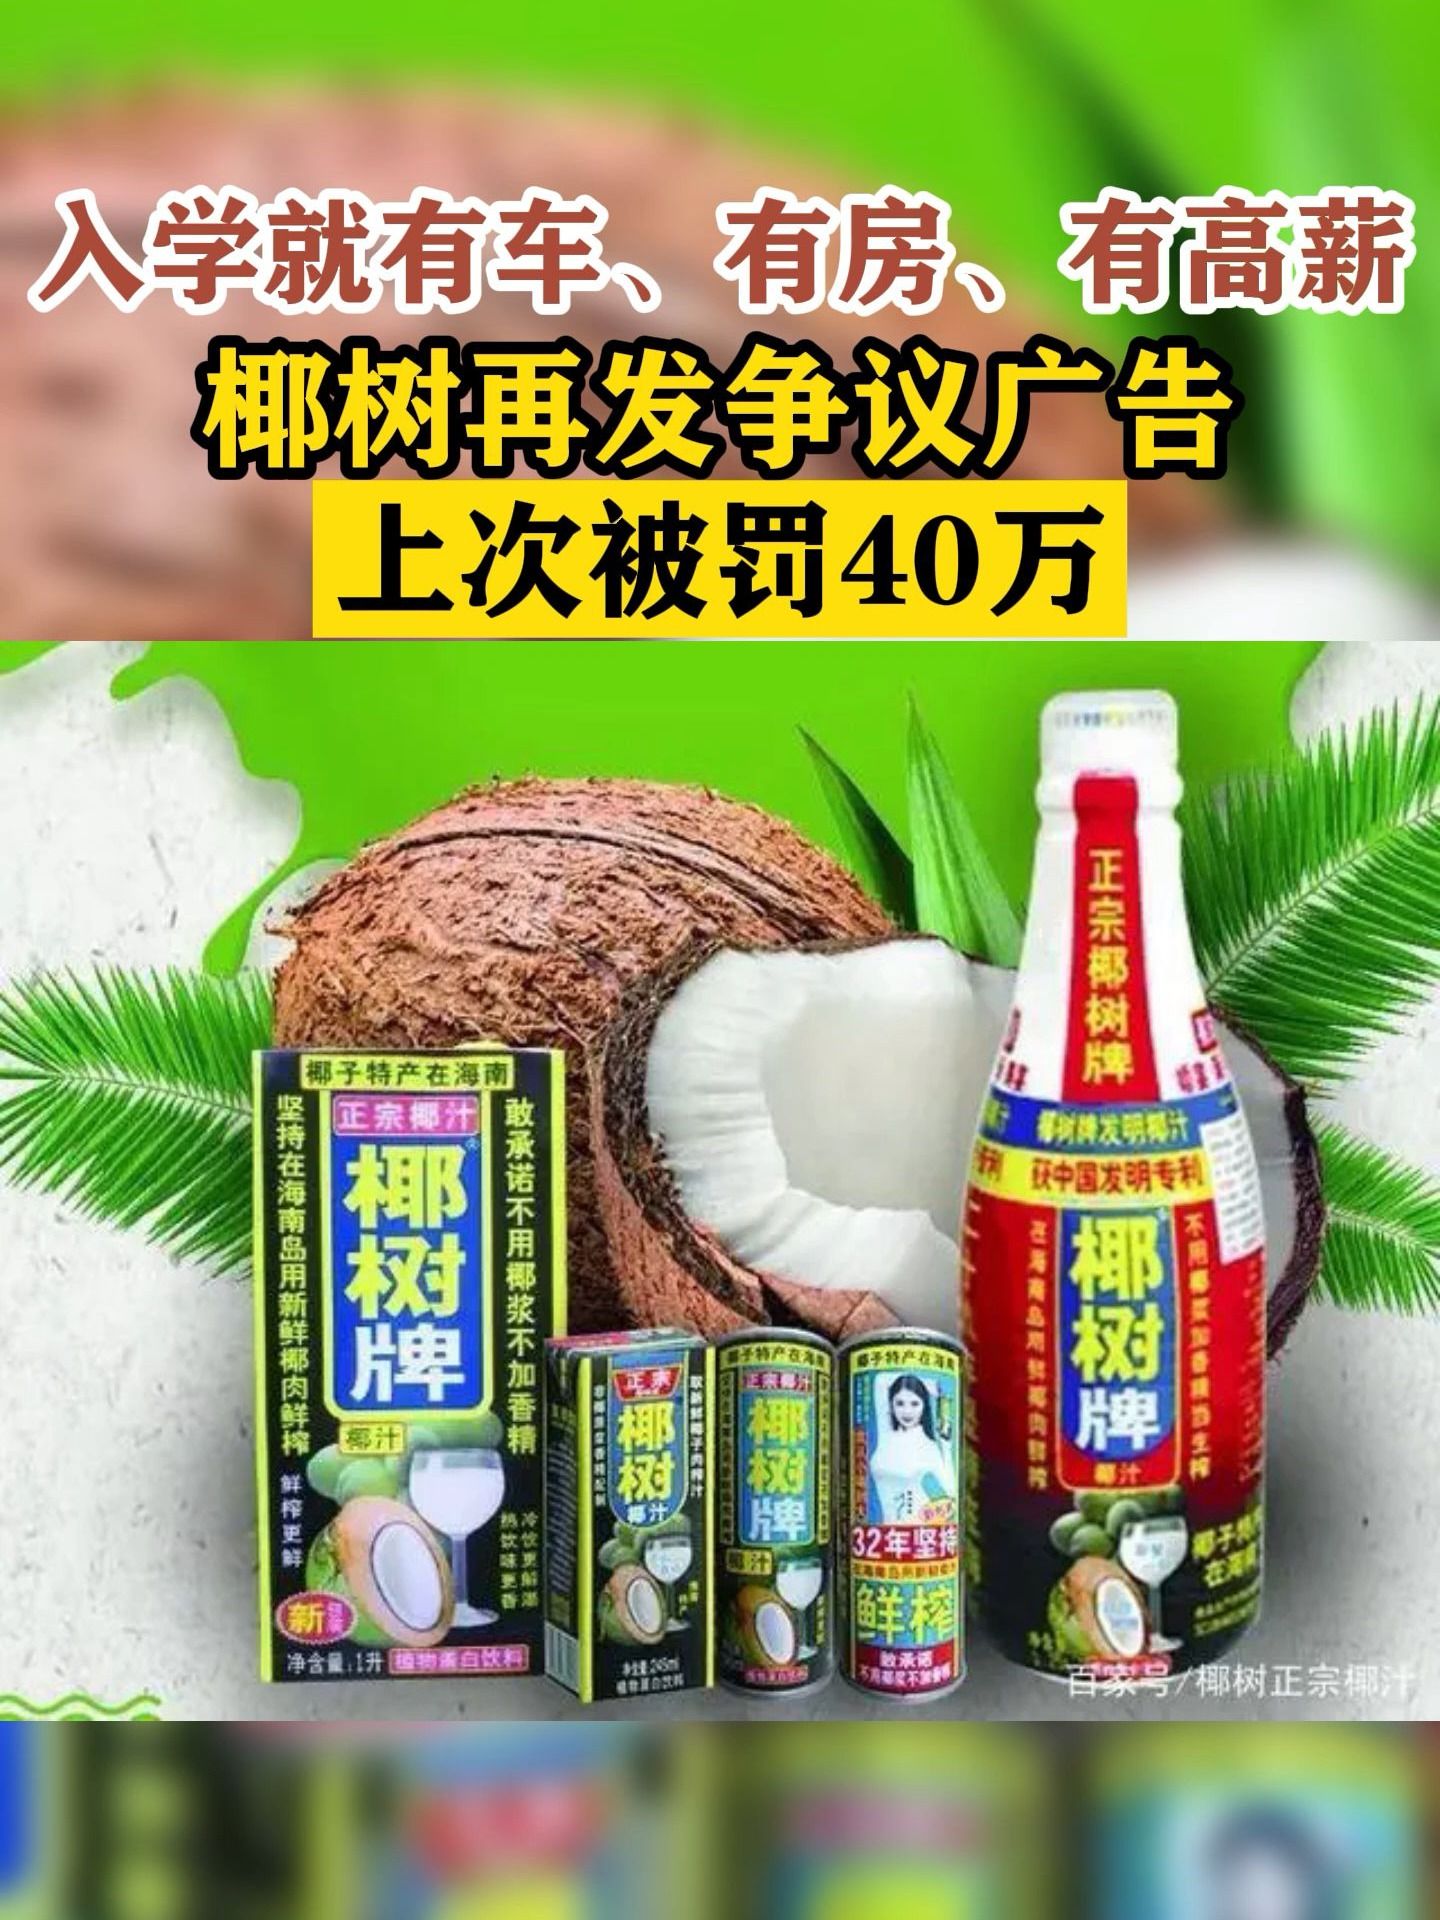 椰树集团再惹争议 直播带货被指“擦边营销”？_央广网